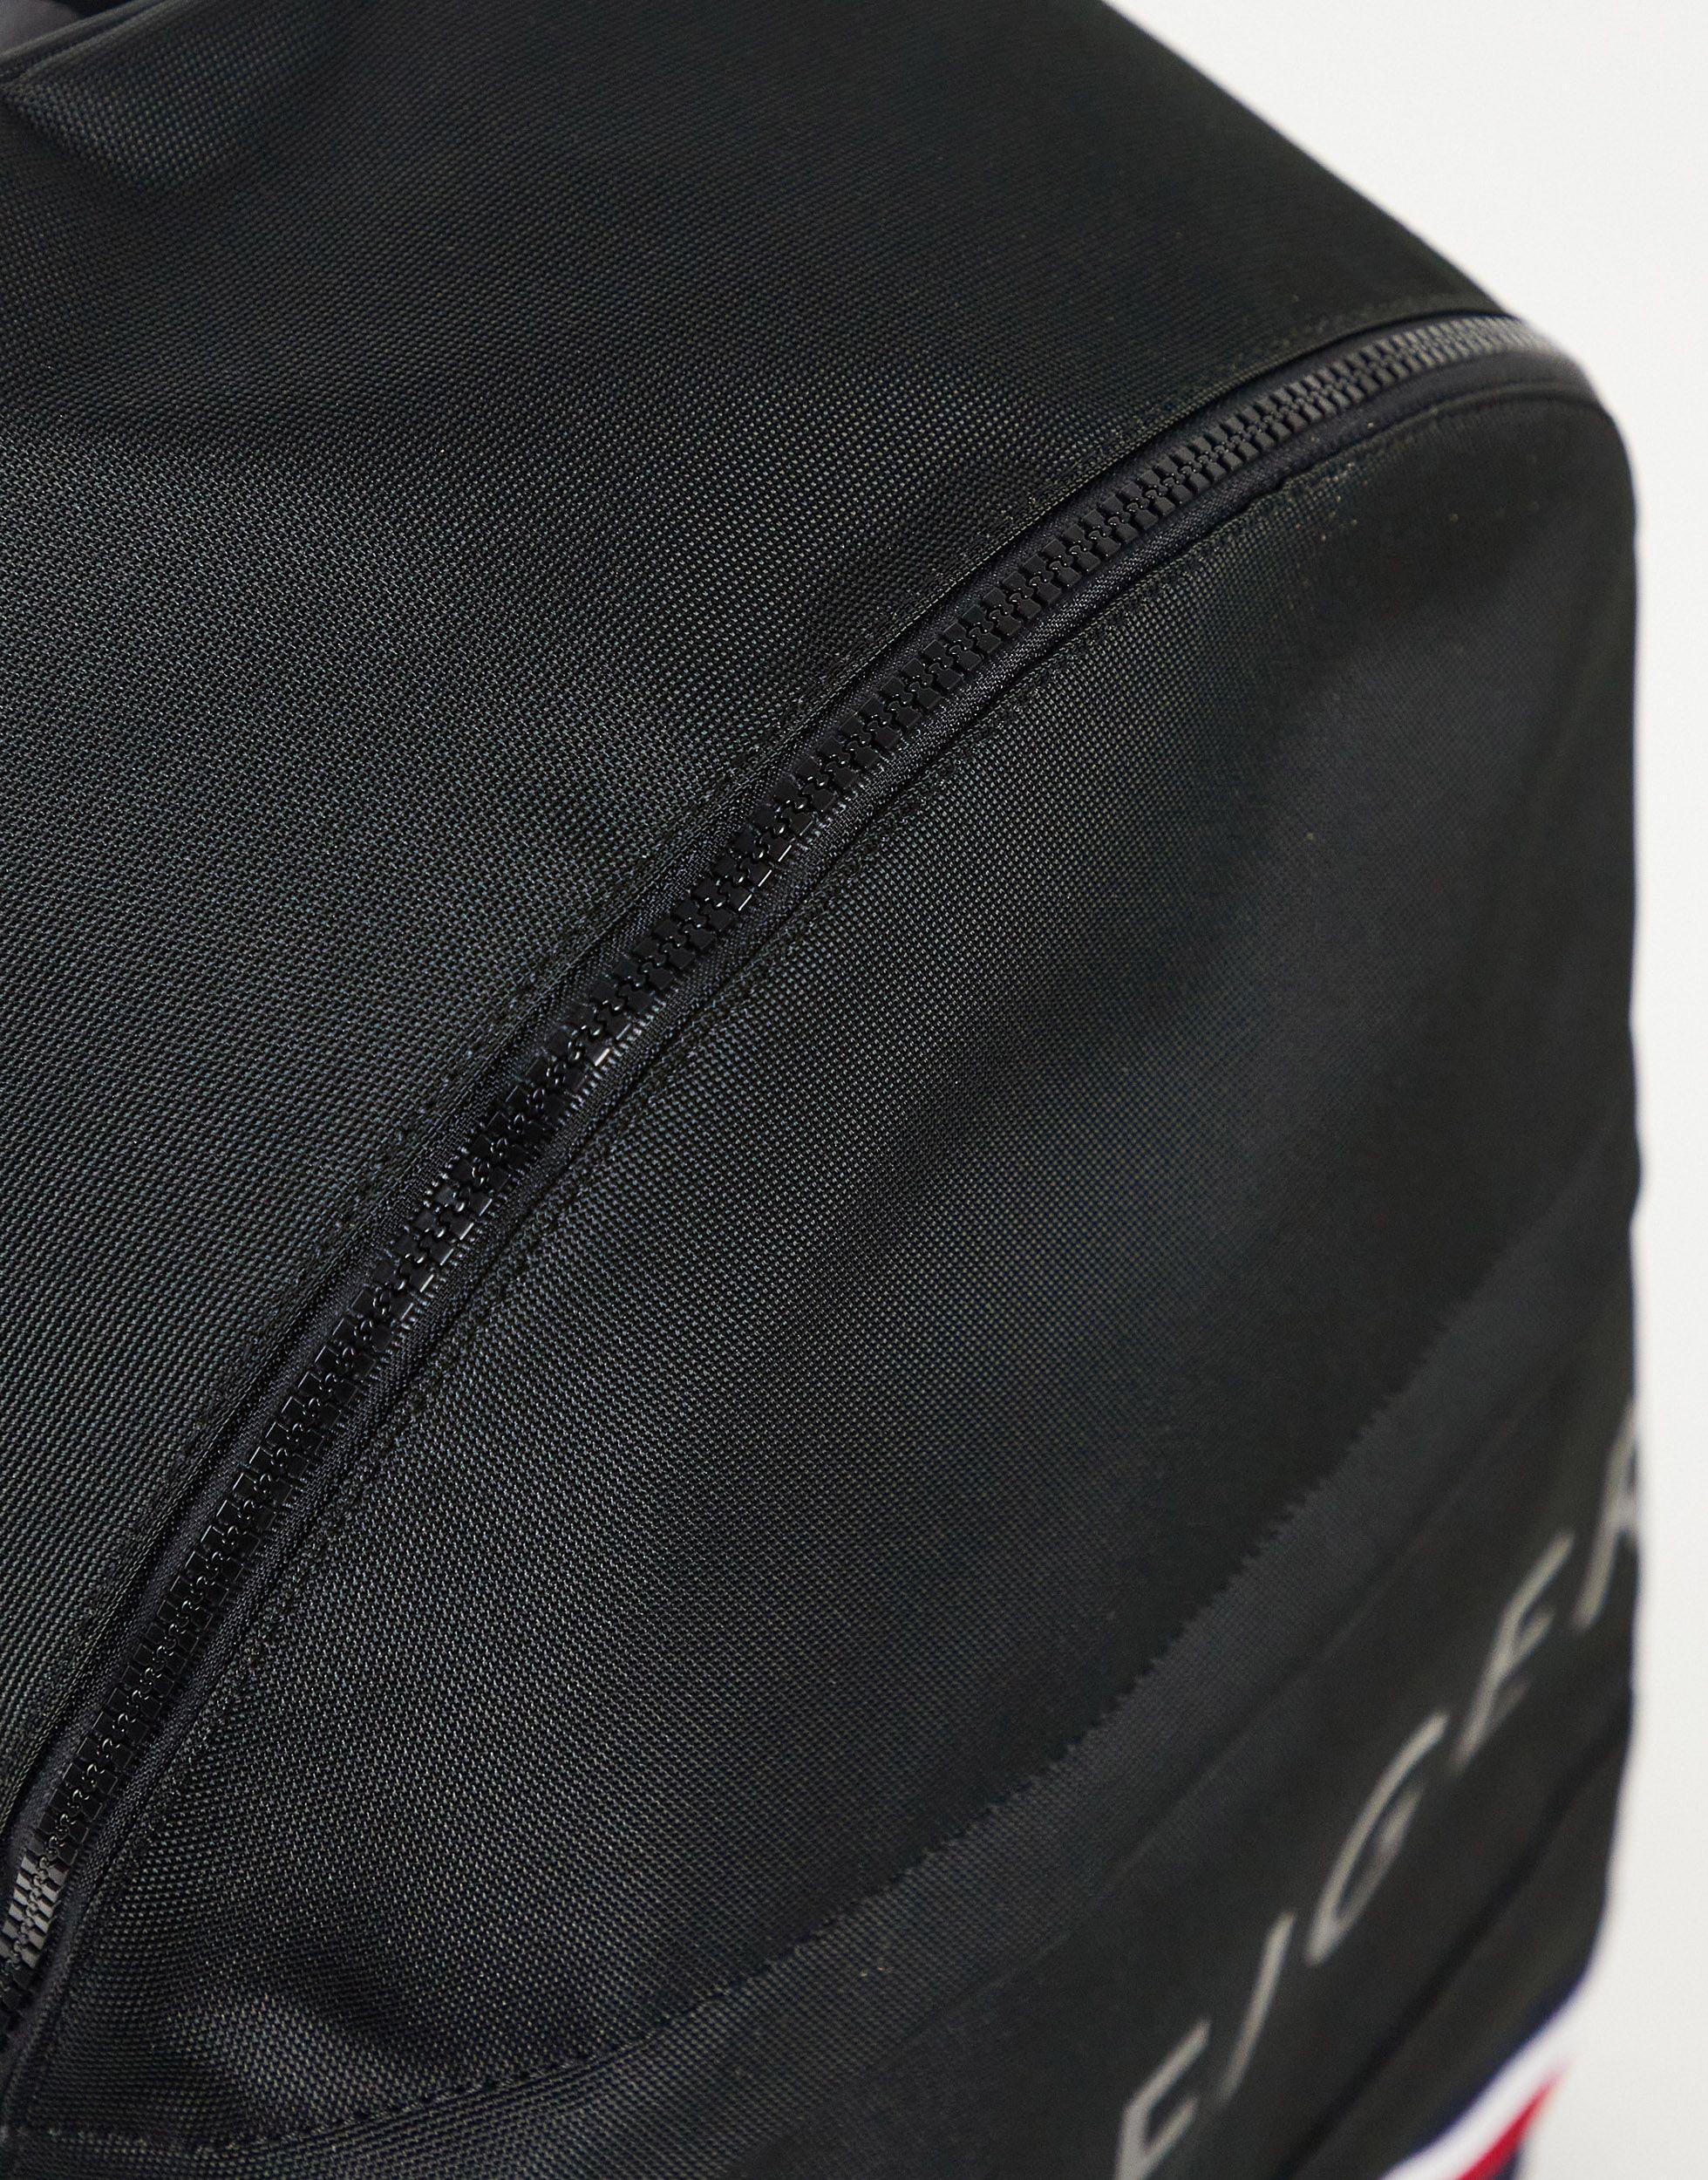 Tommy Hilfiger Colton Backpack in Black for Men - Lyst